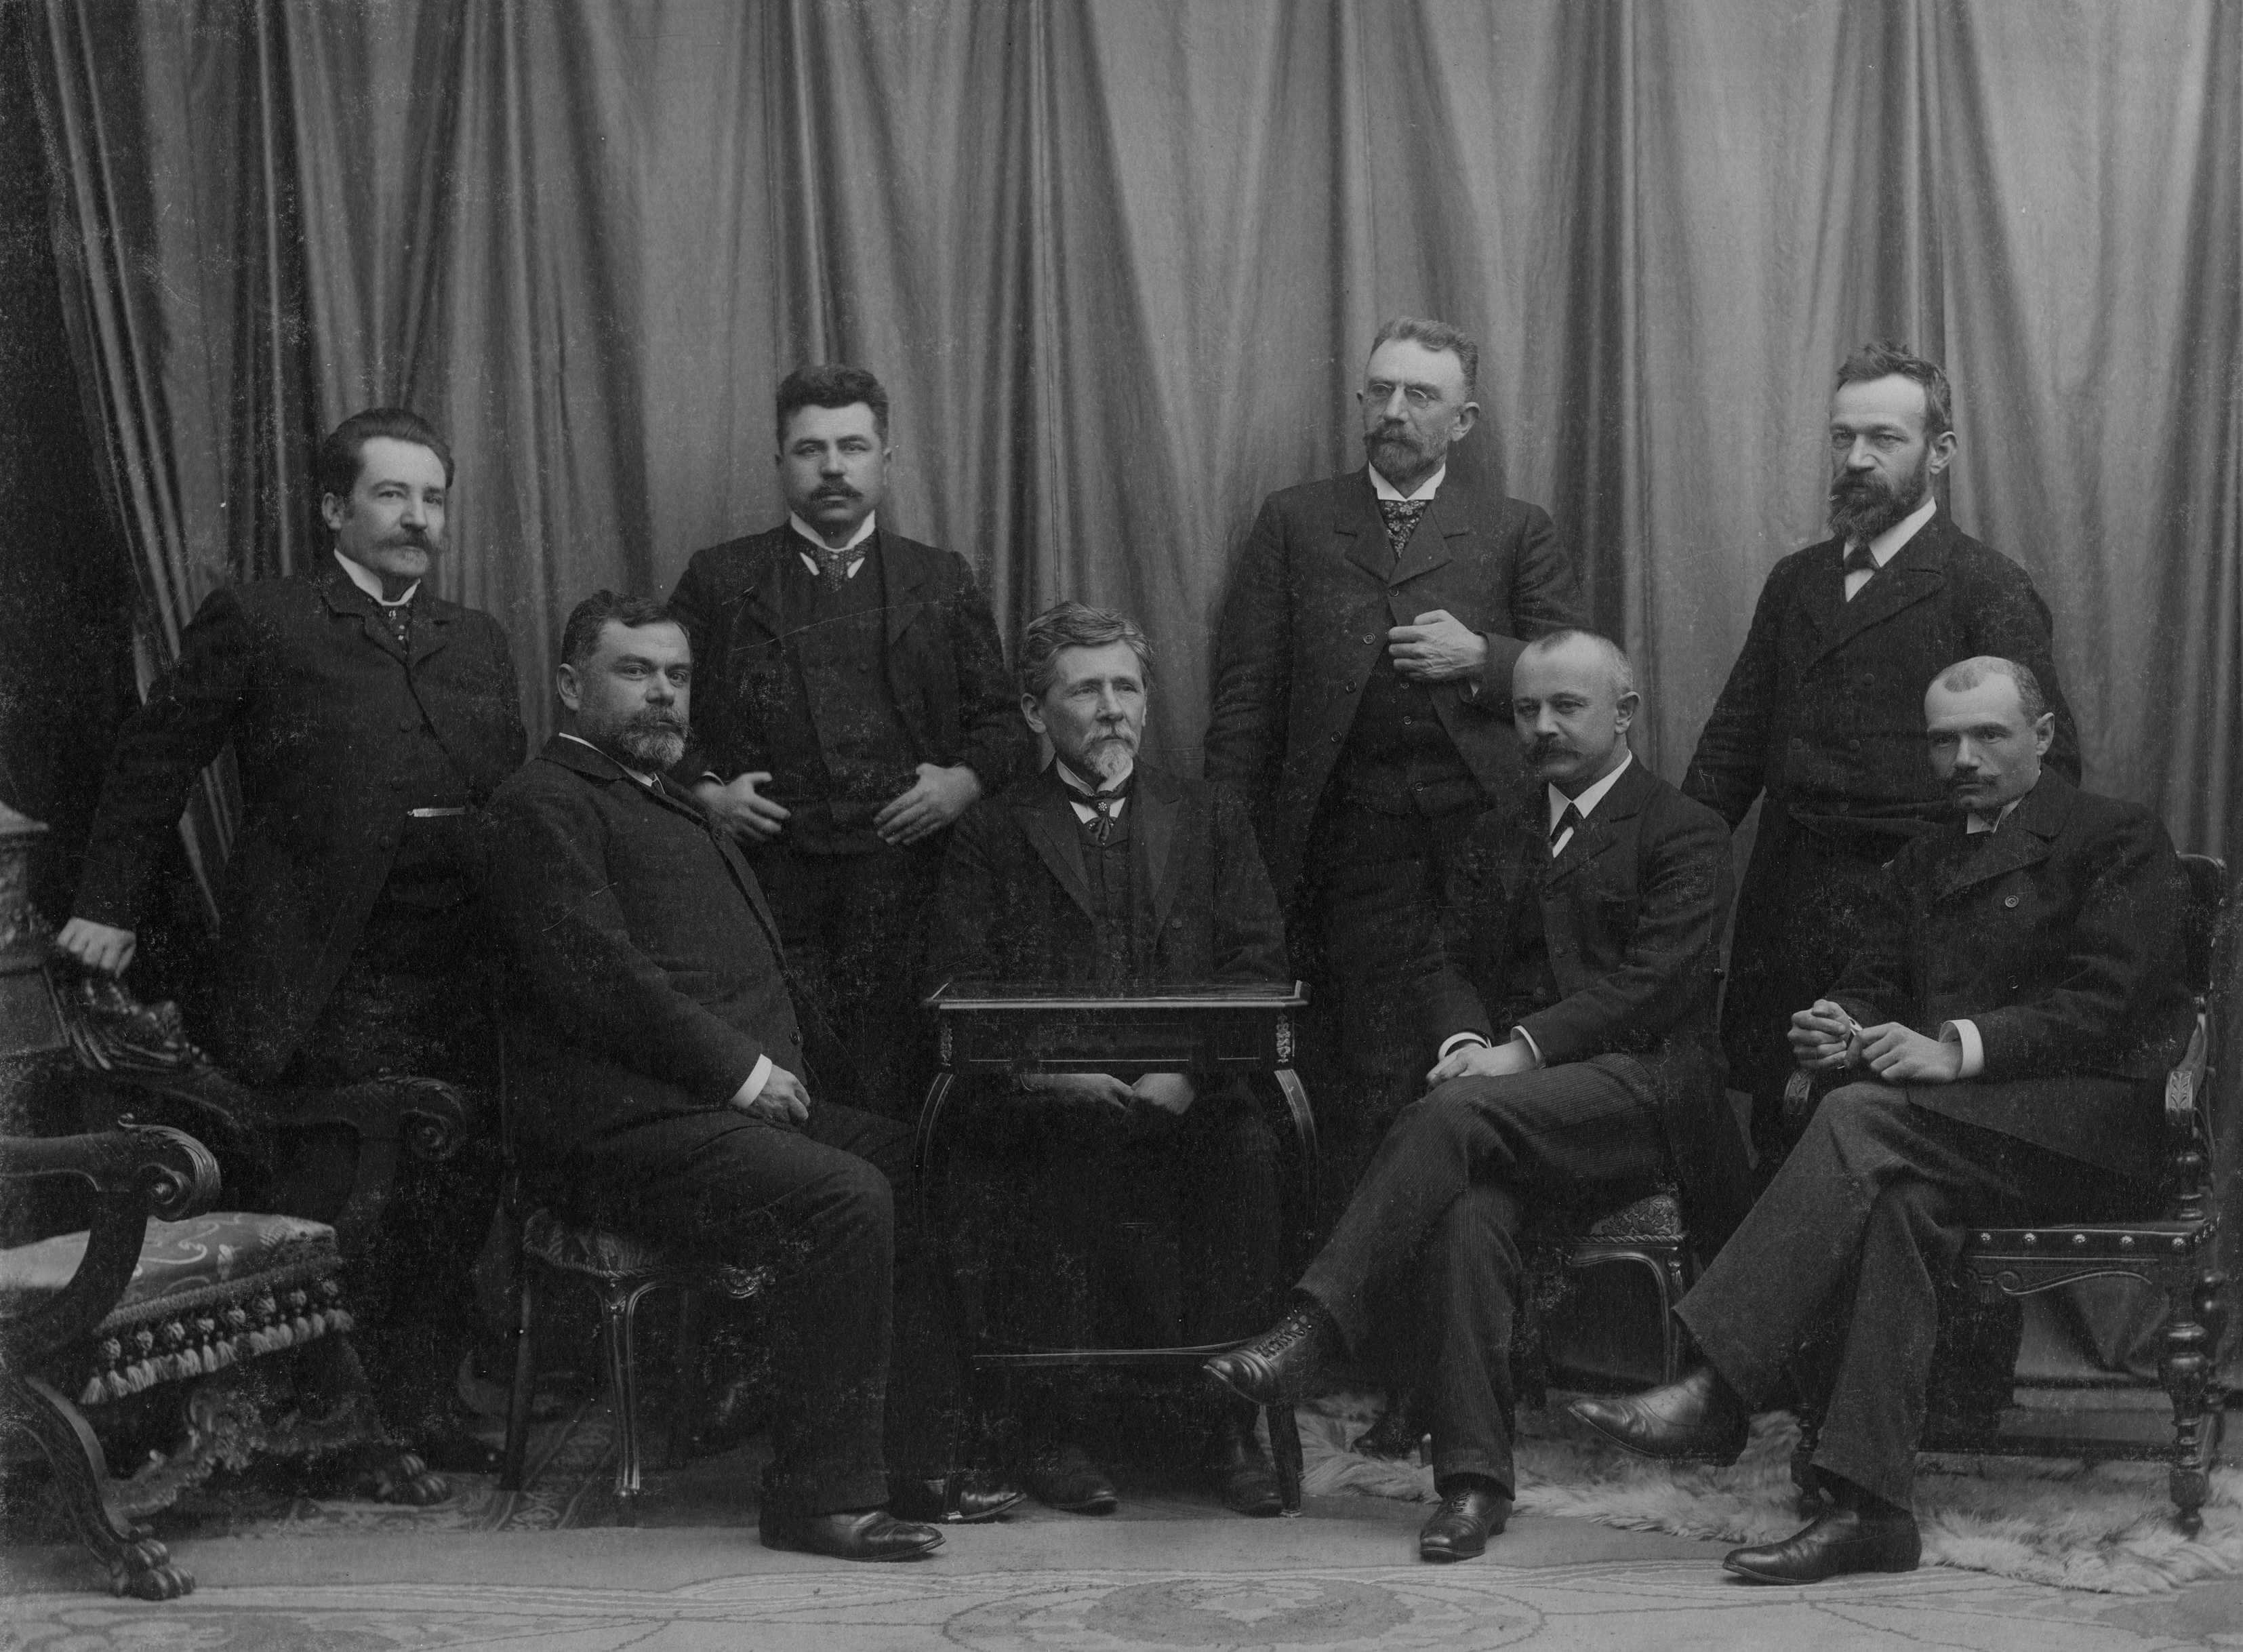 The first eight professors of the University of Belgrade in 1905. Sitting from left to right: Jovan Žujović, Sima Lozanić, Jovan Cvijić and Mihailo Petrović. Standing from left to right: Andra Stevanović, Dragoljub Pavlović, Milić Radovanović and Ljubomir Jovanović. (SASA Archive, 14197/18)